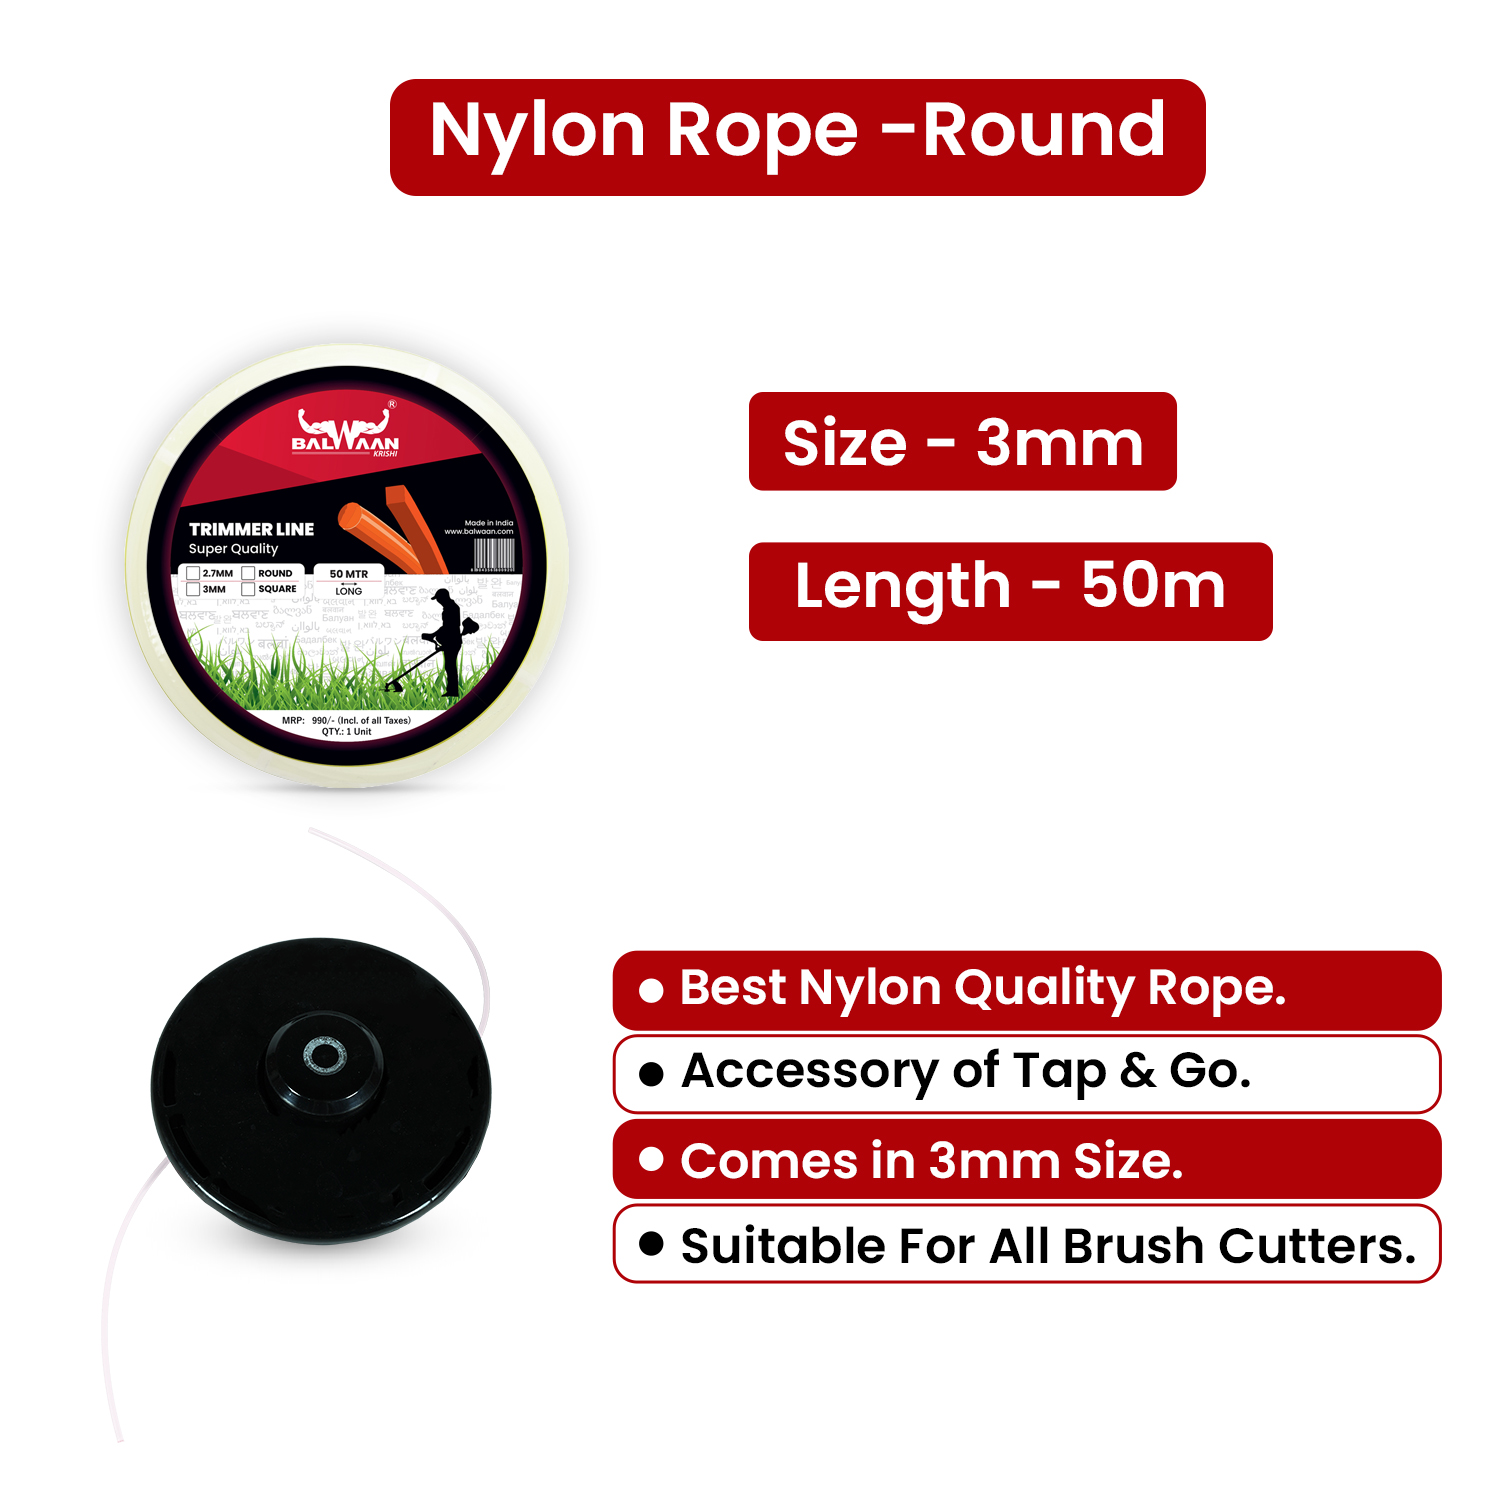 Balwaan Nylon Rope 3mm 50 Mtr- Round (White)